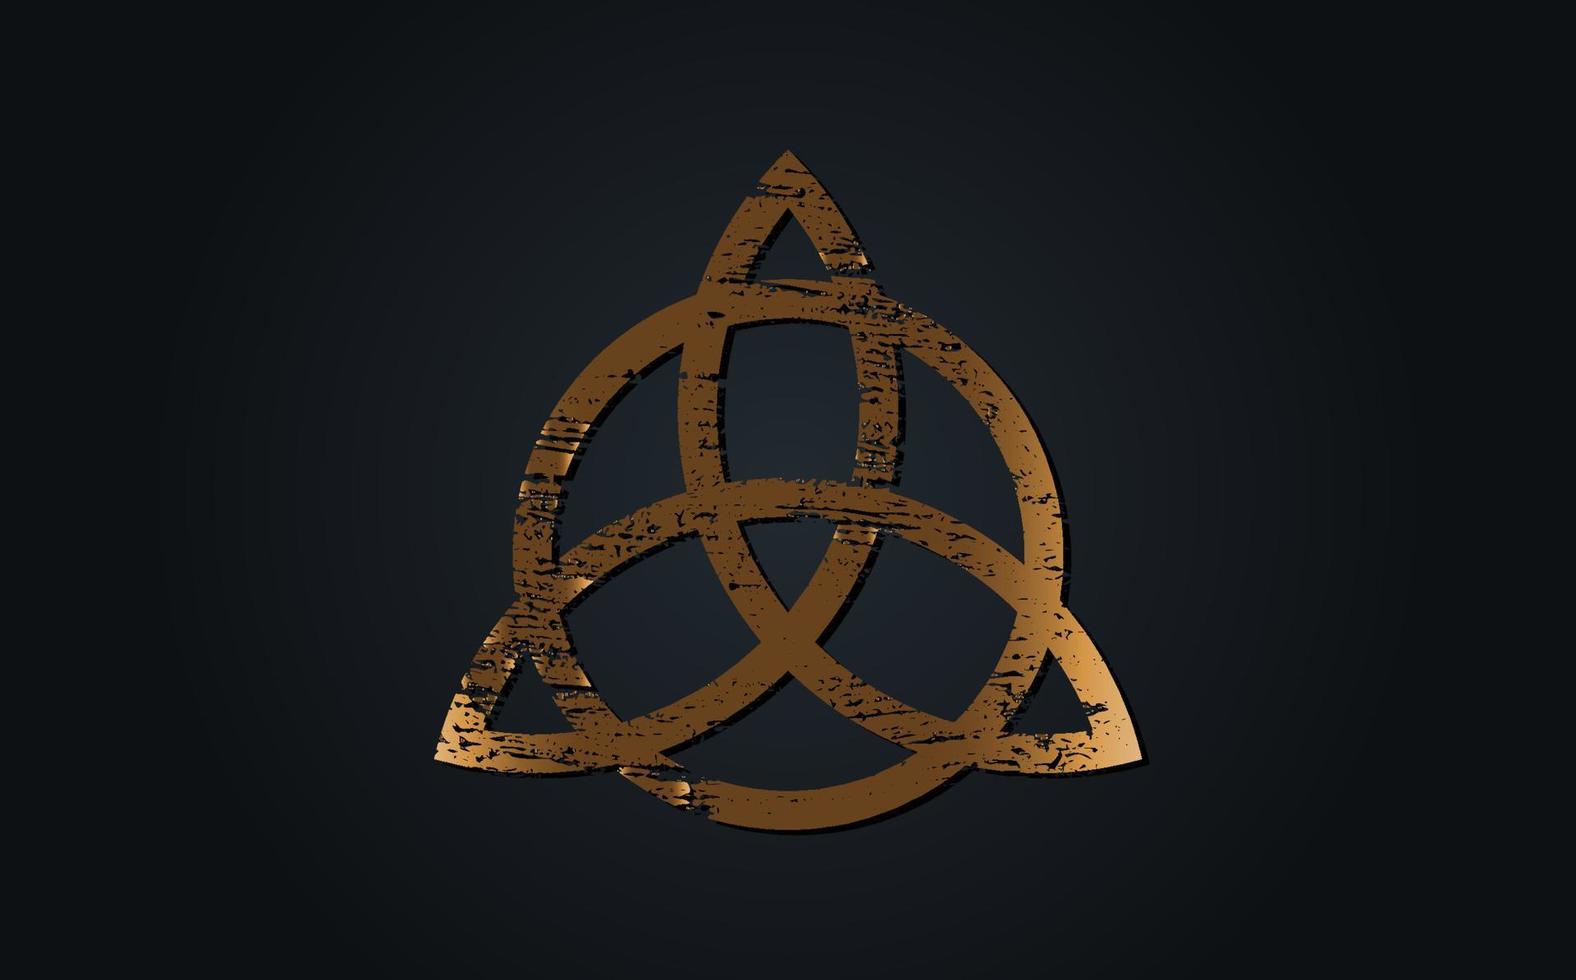 triquetra antigua de oro, nudo trinitario, símbolo wiccano de protección. viejo cartel grunge celta. símbolo de adivinación wiccan, símbolos ocultos, vector de geometría sagrada aislado en fondo negro